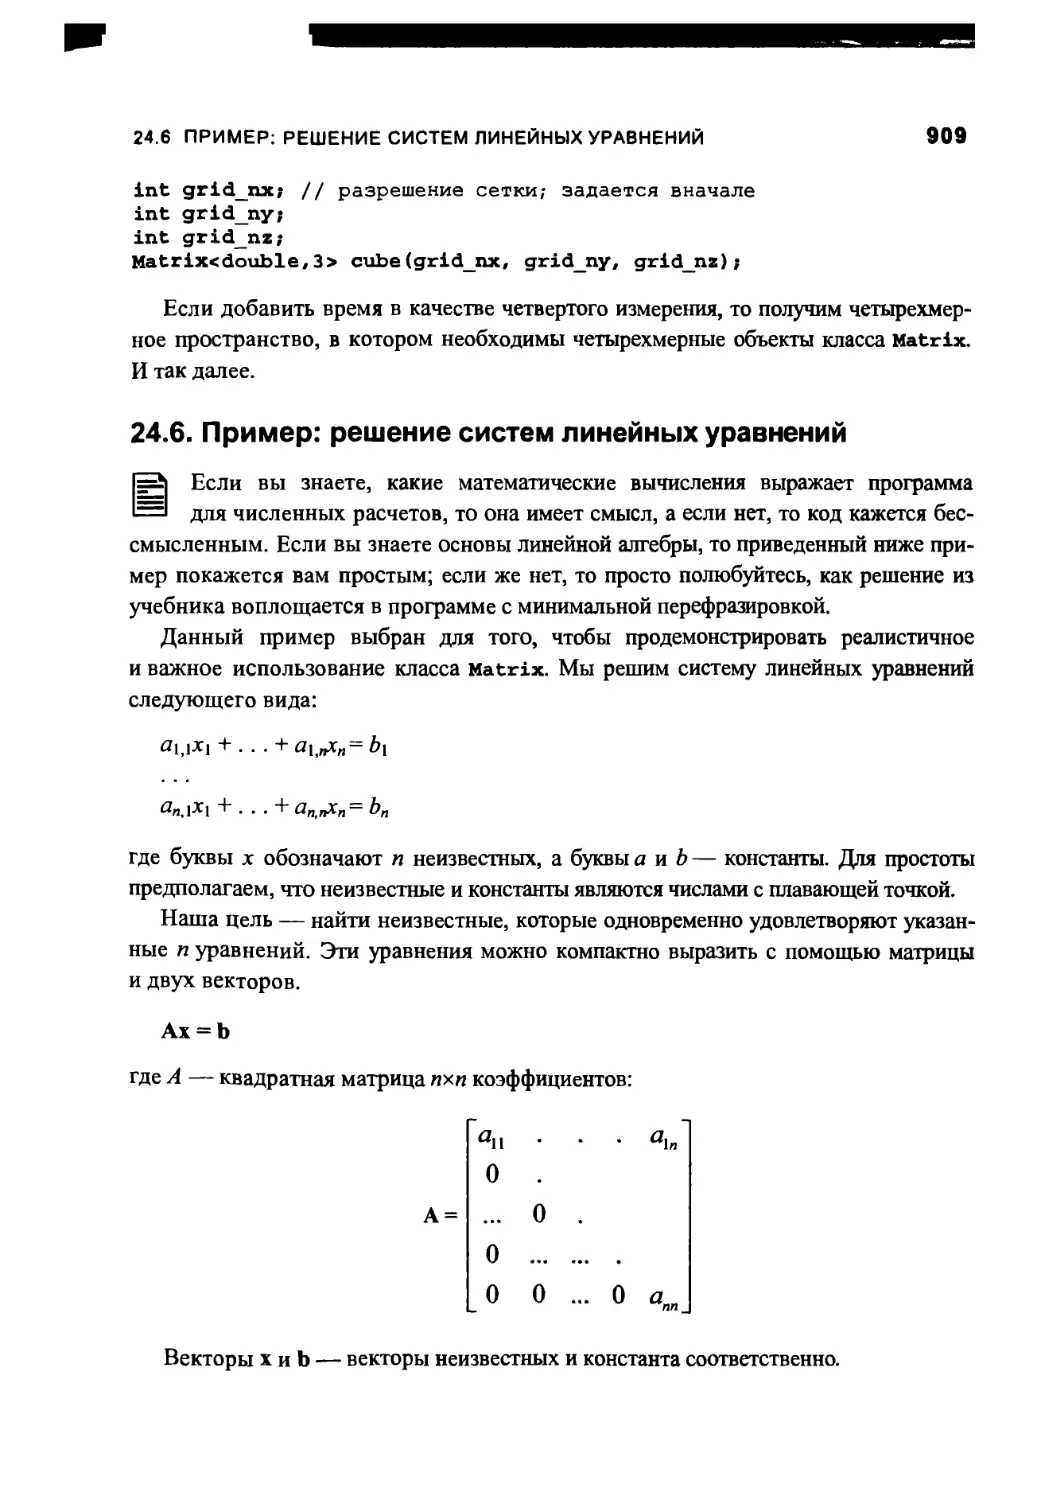 24.6. Пример: решение систем линейных уравнений